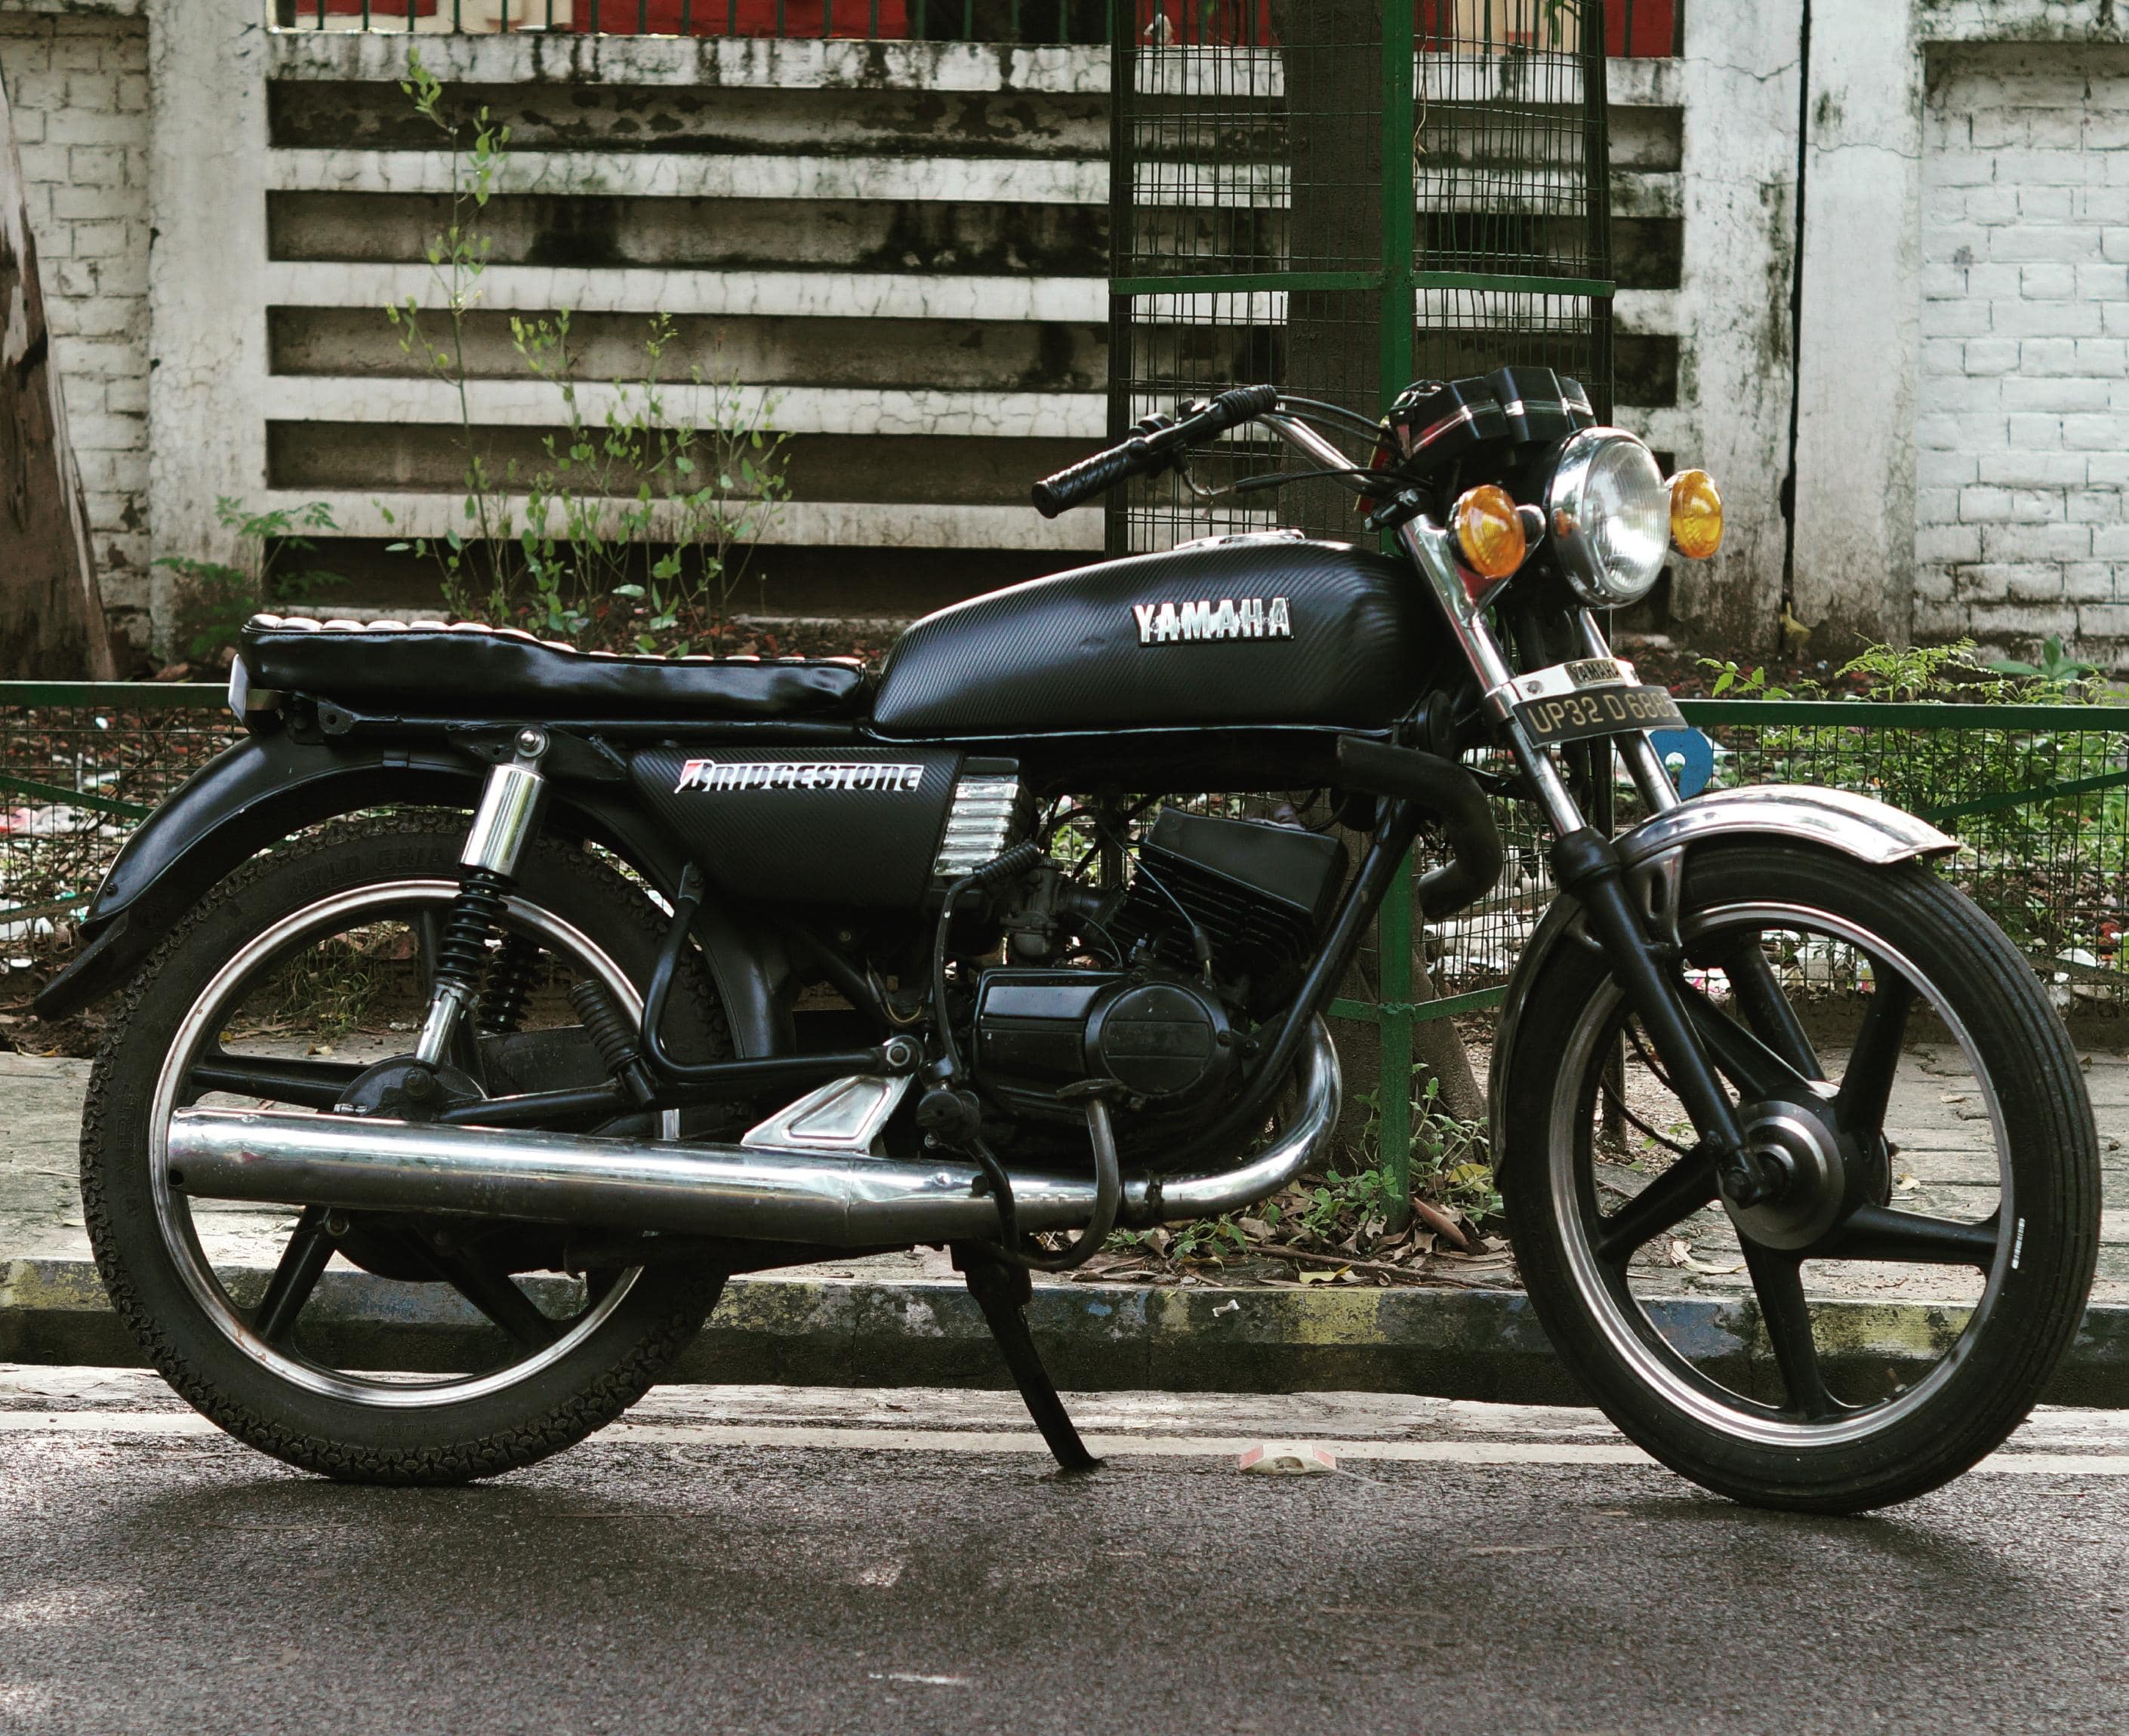 Yamaha Rx 100 Bike Price India لم يسبق له مثيل الصور Tier3 Xyz